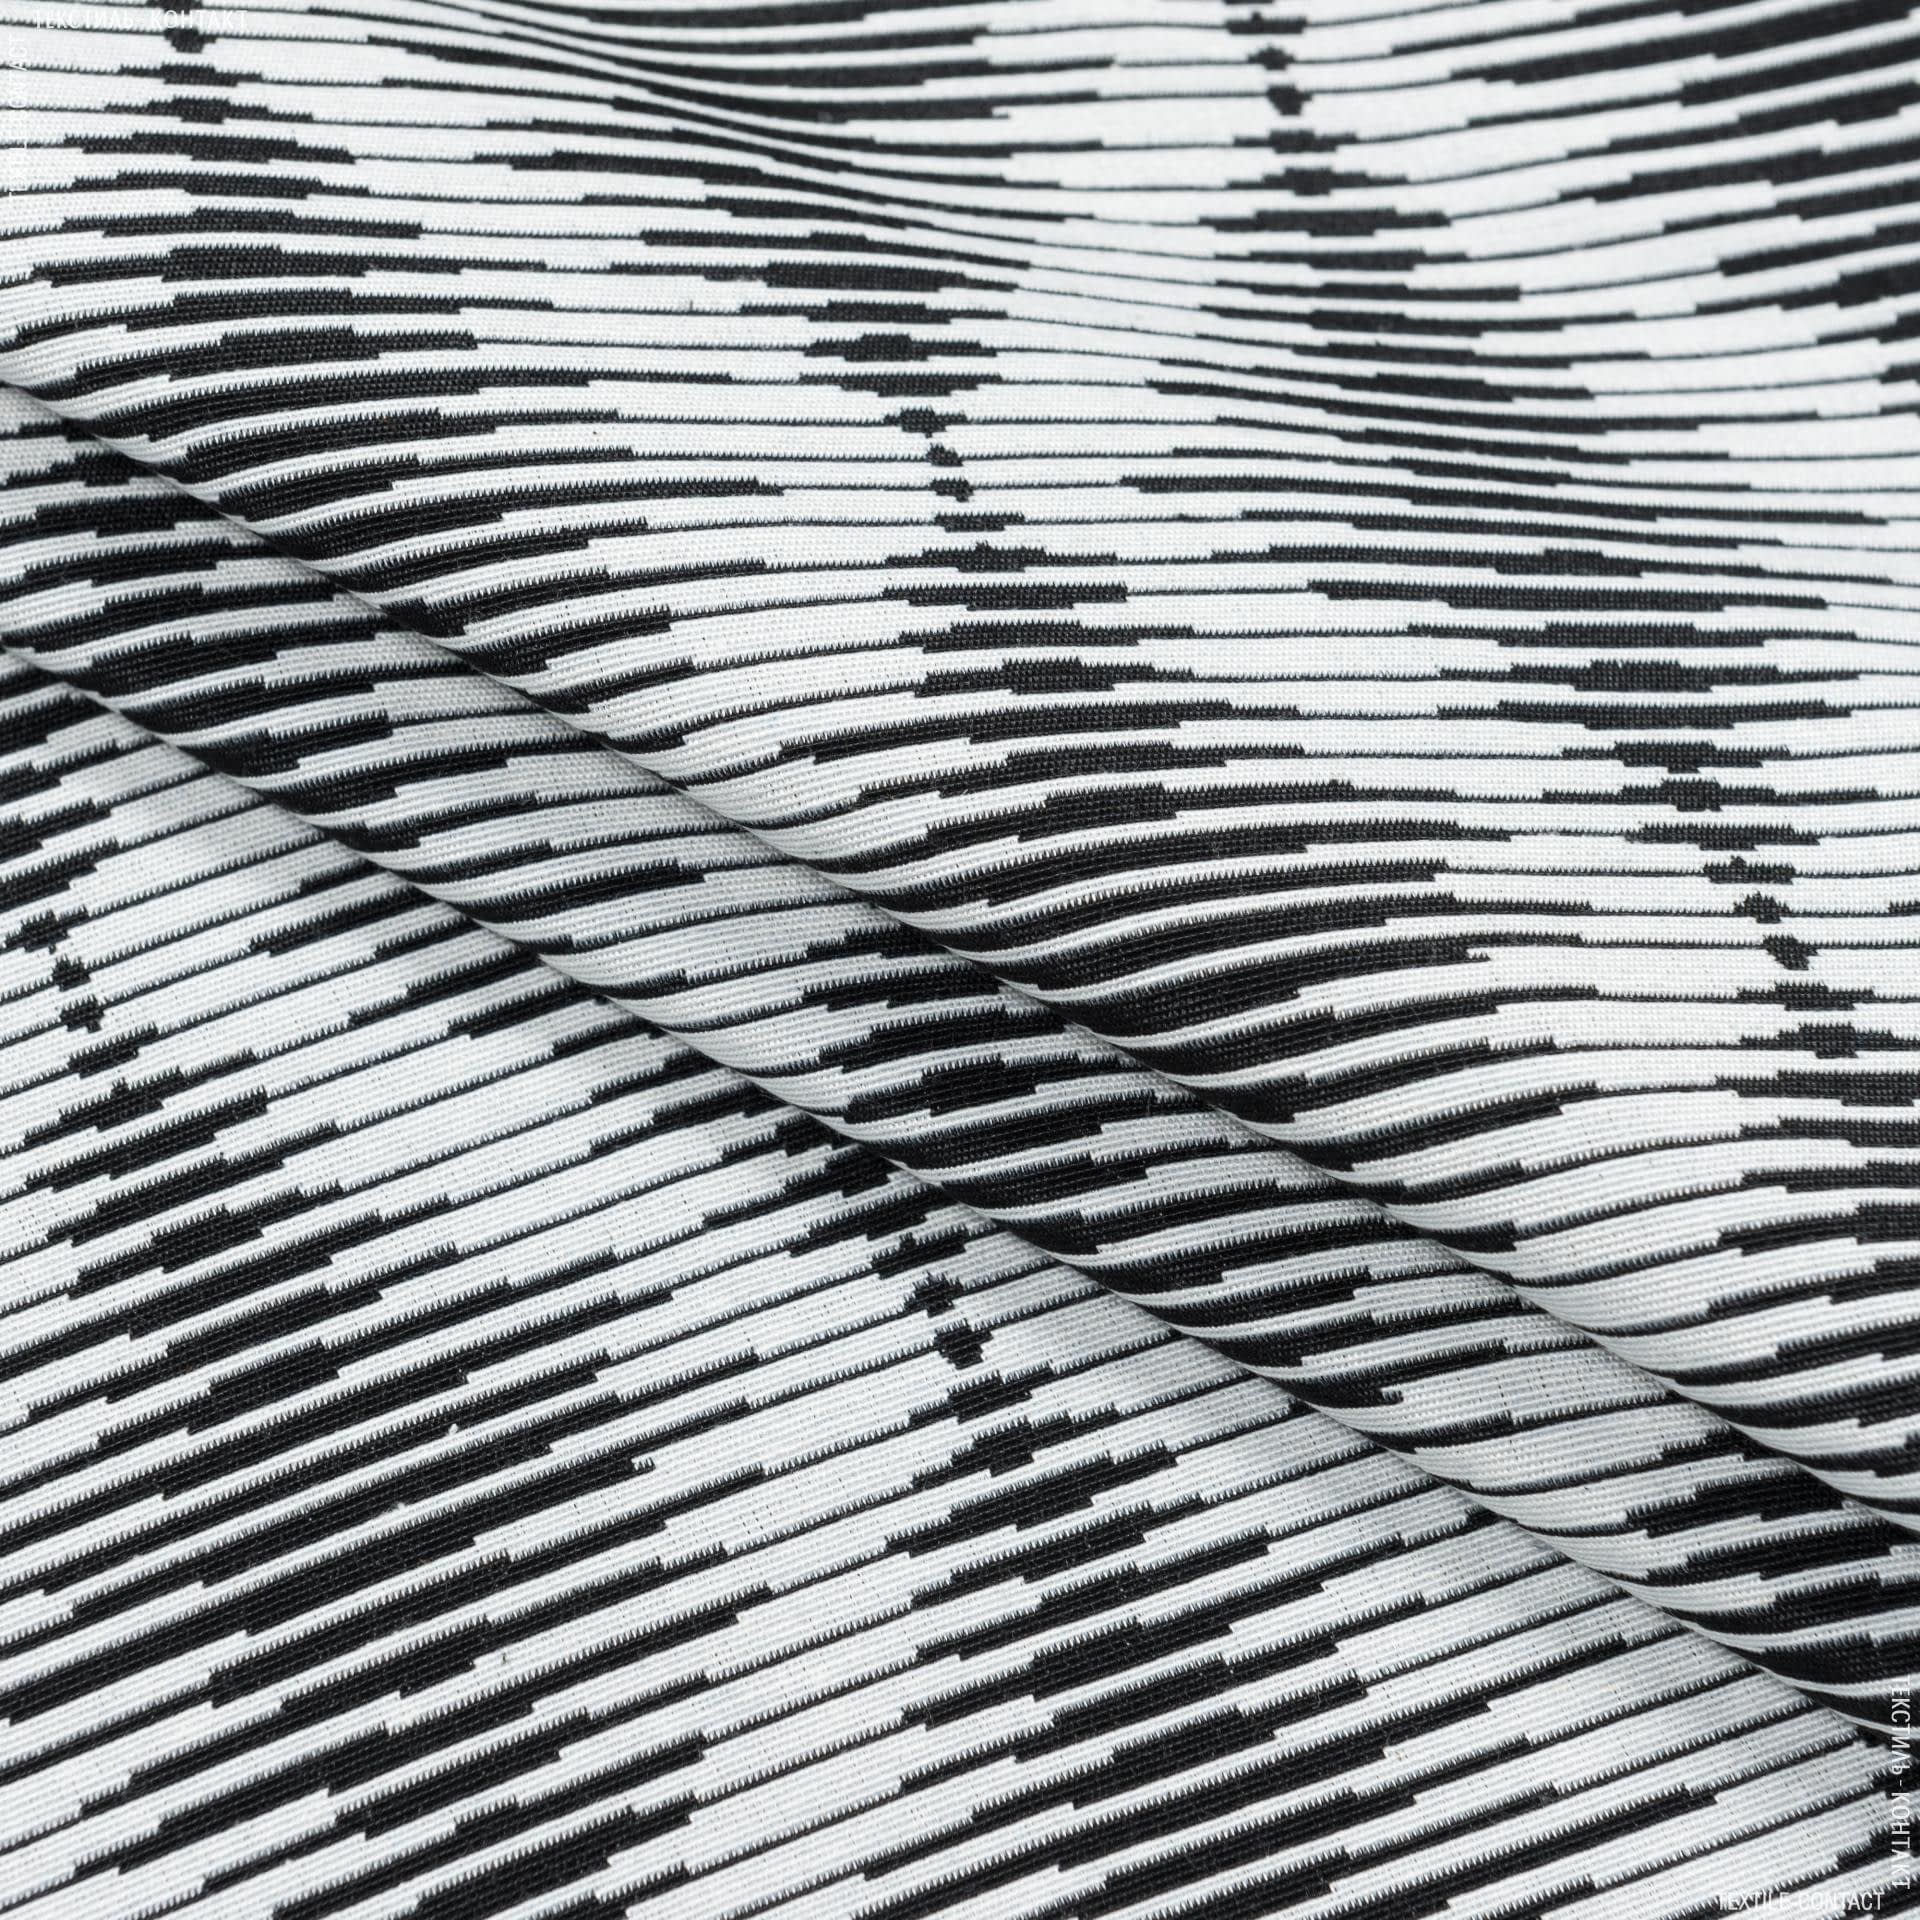 Ткани портьерные ткани - Жаккард матти-4/ mattie-4  /черный